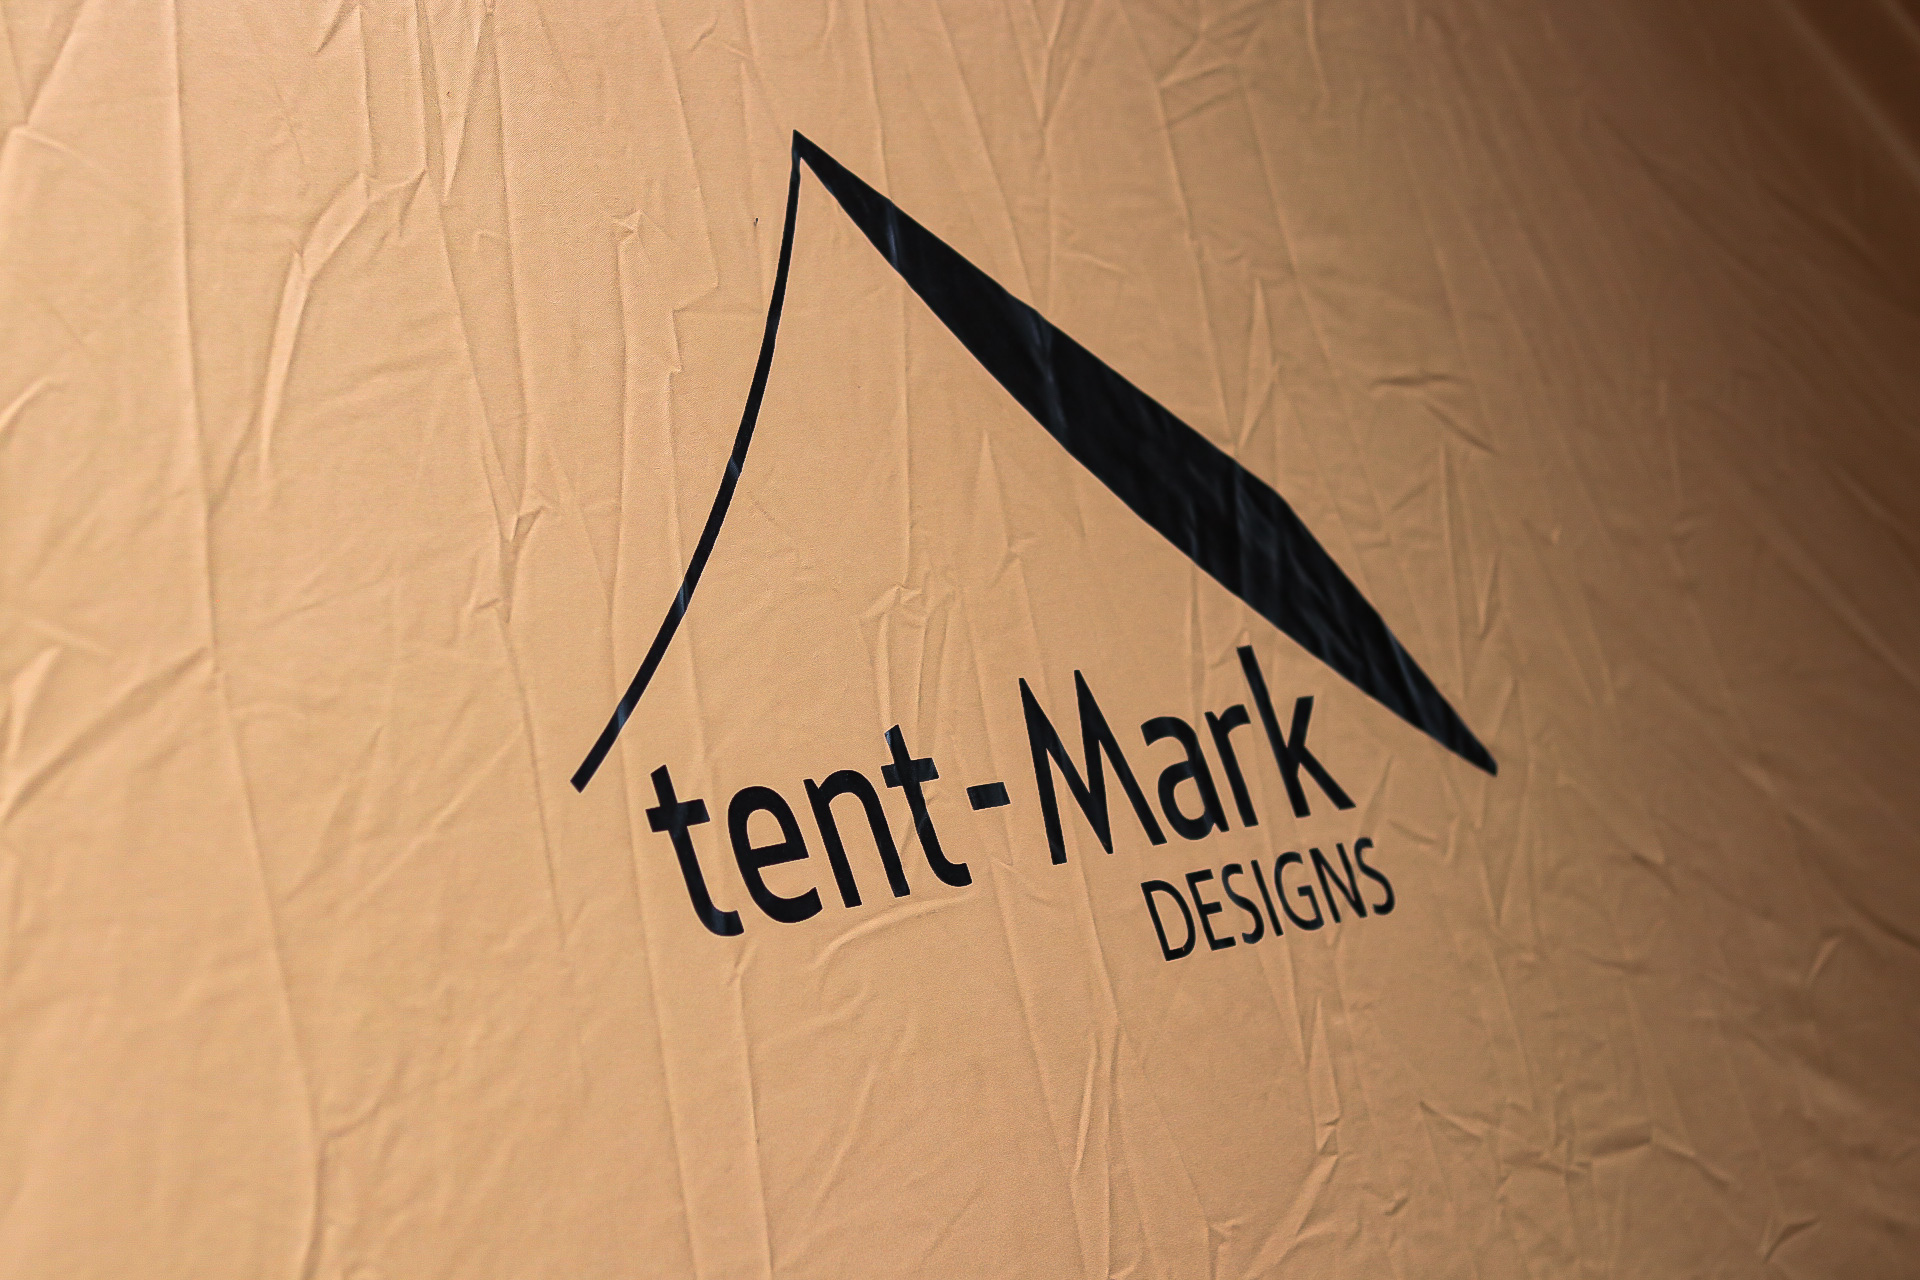 売れ筋  テンマクデザイン　サーカス　ドライポット DESIGNS tent-Mark テント/タープ